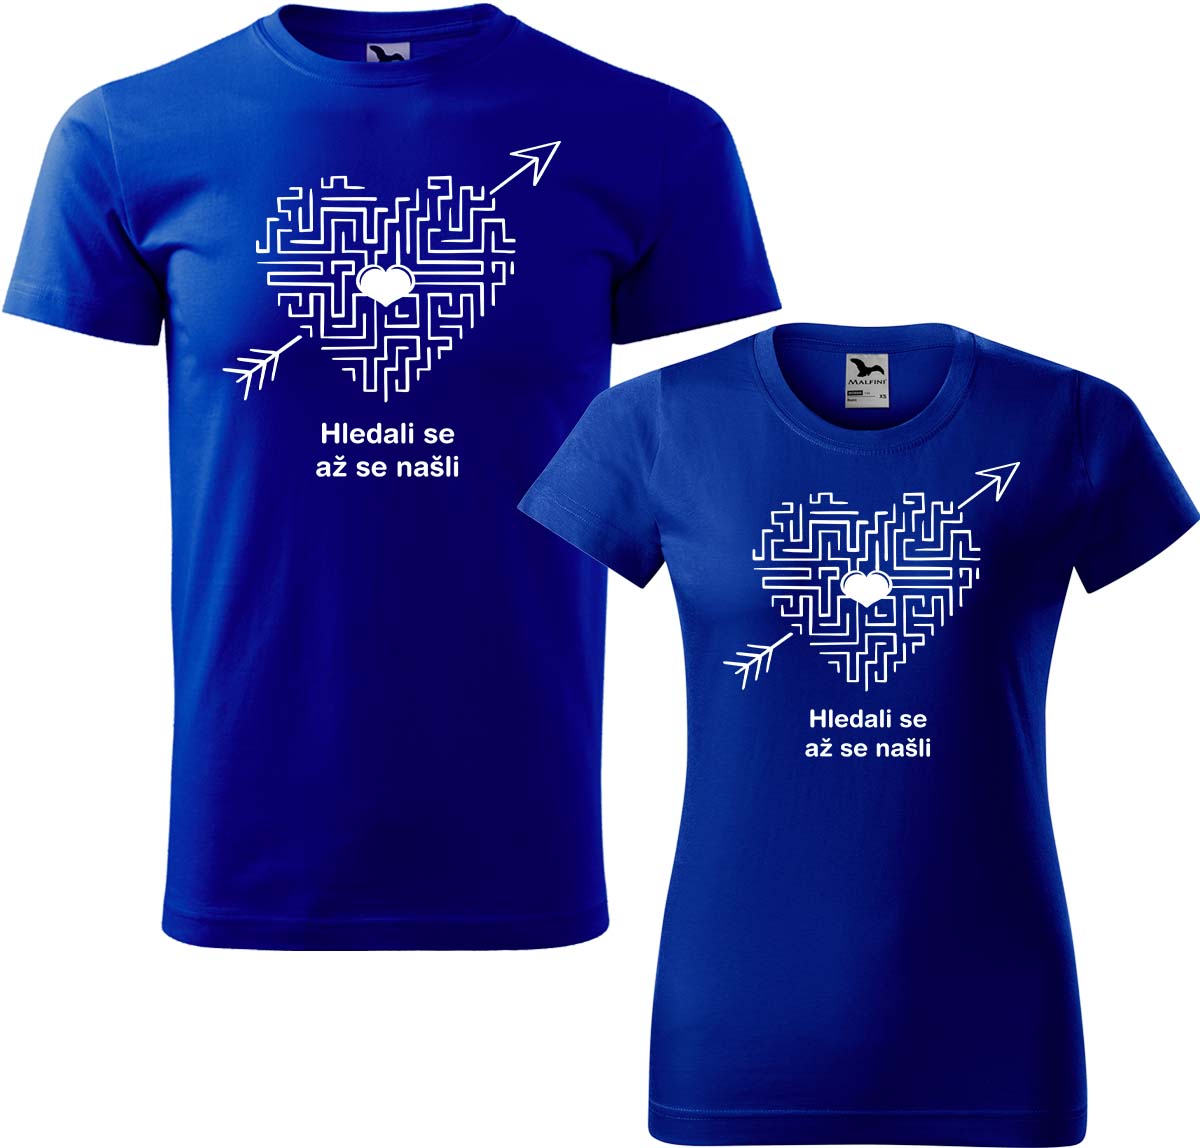 Trička pro páry - Hledali se, až se našli (srdce) Barva: Královská modrá (05), Velikost dámské tričko: XL, Velikost pánské tričko: XL